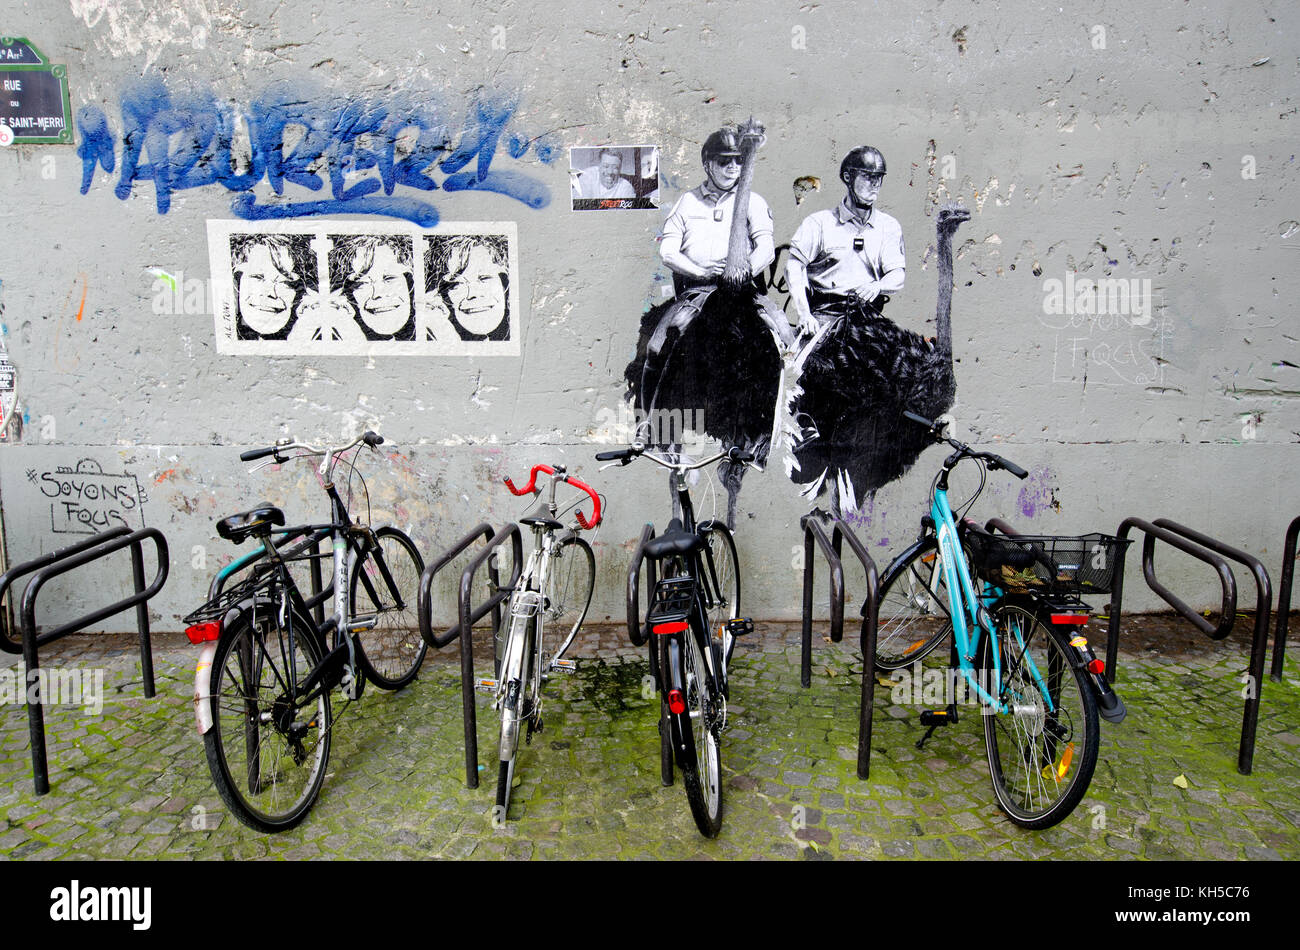 Paris, France. La Police montée sur des autruches, graffiti, porte-vélo, rue du Cloître Saint-Merri, 4e arr Banque D'Images